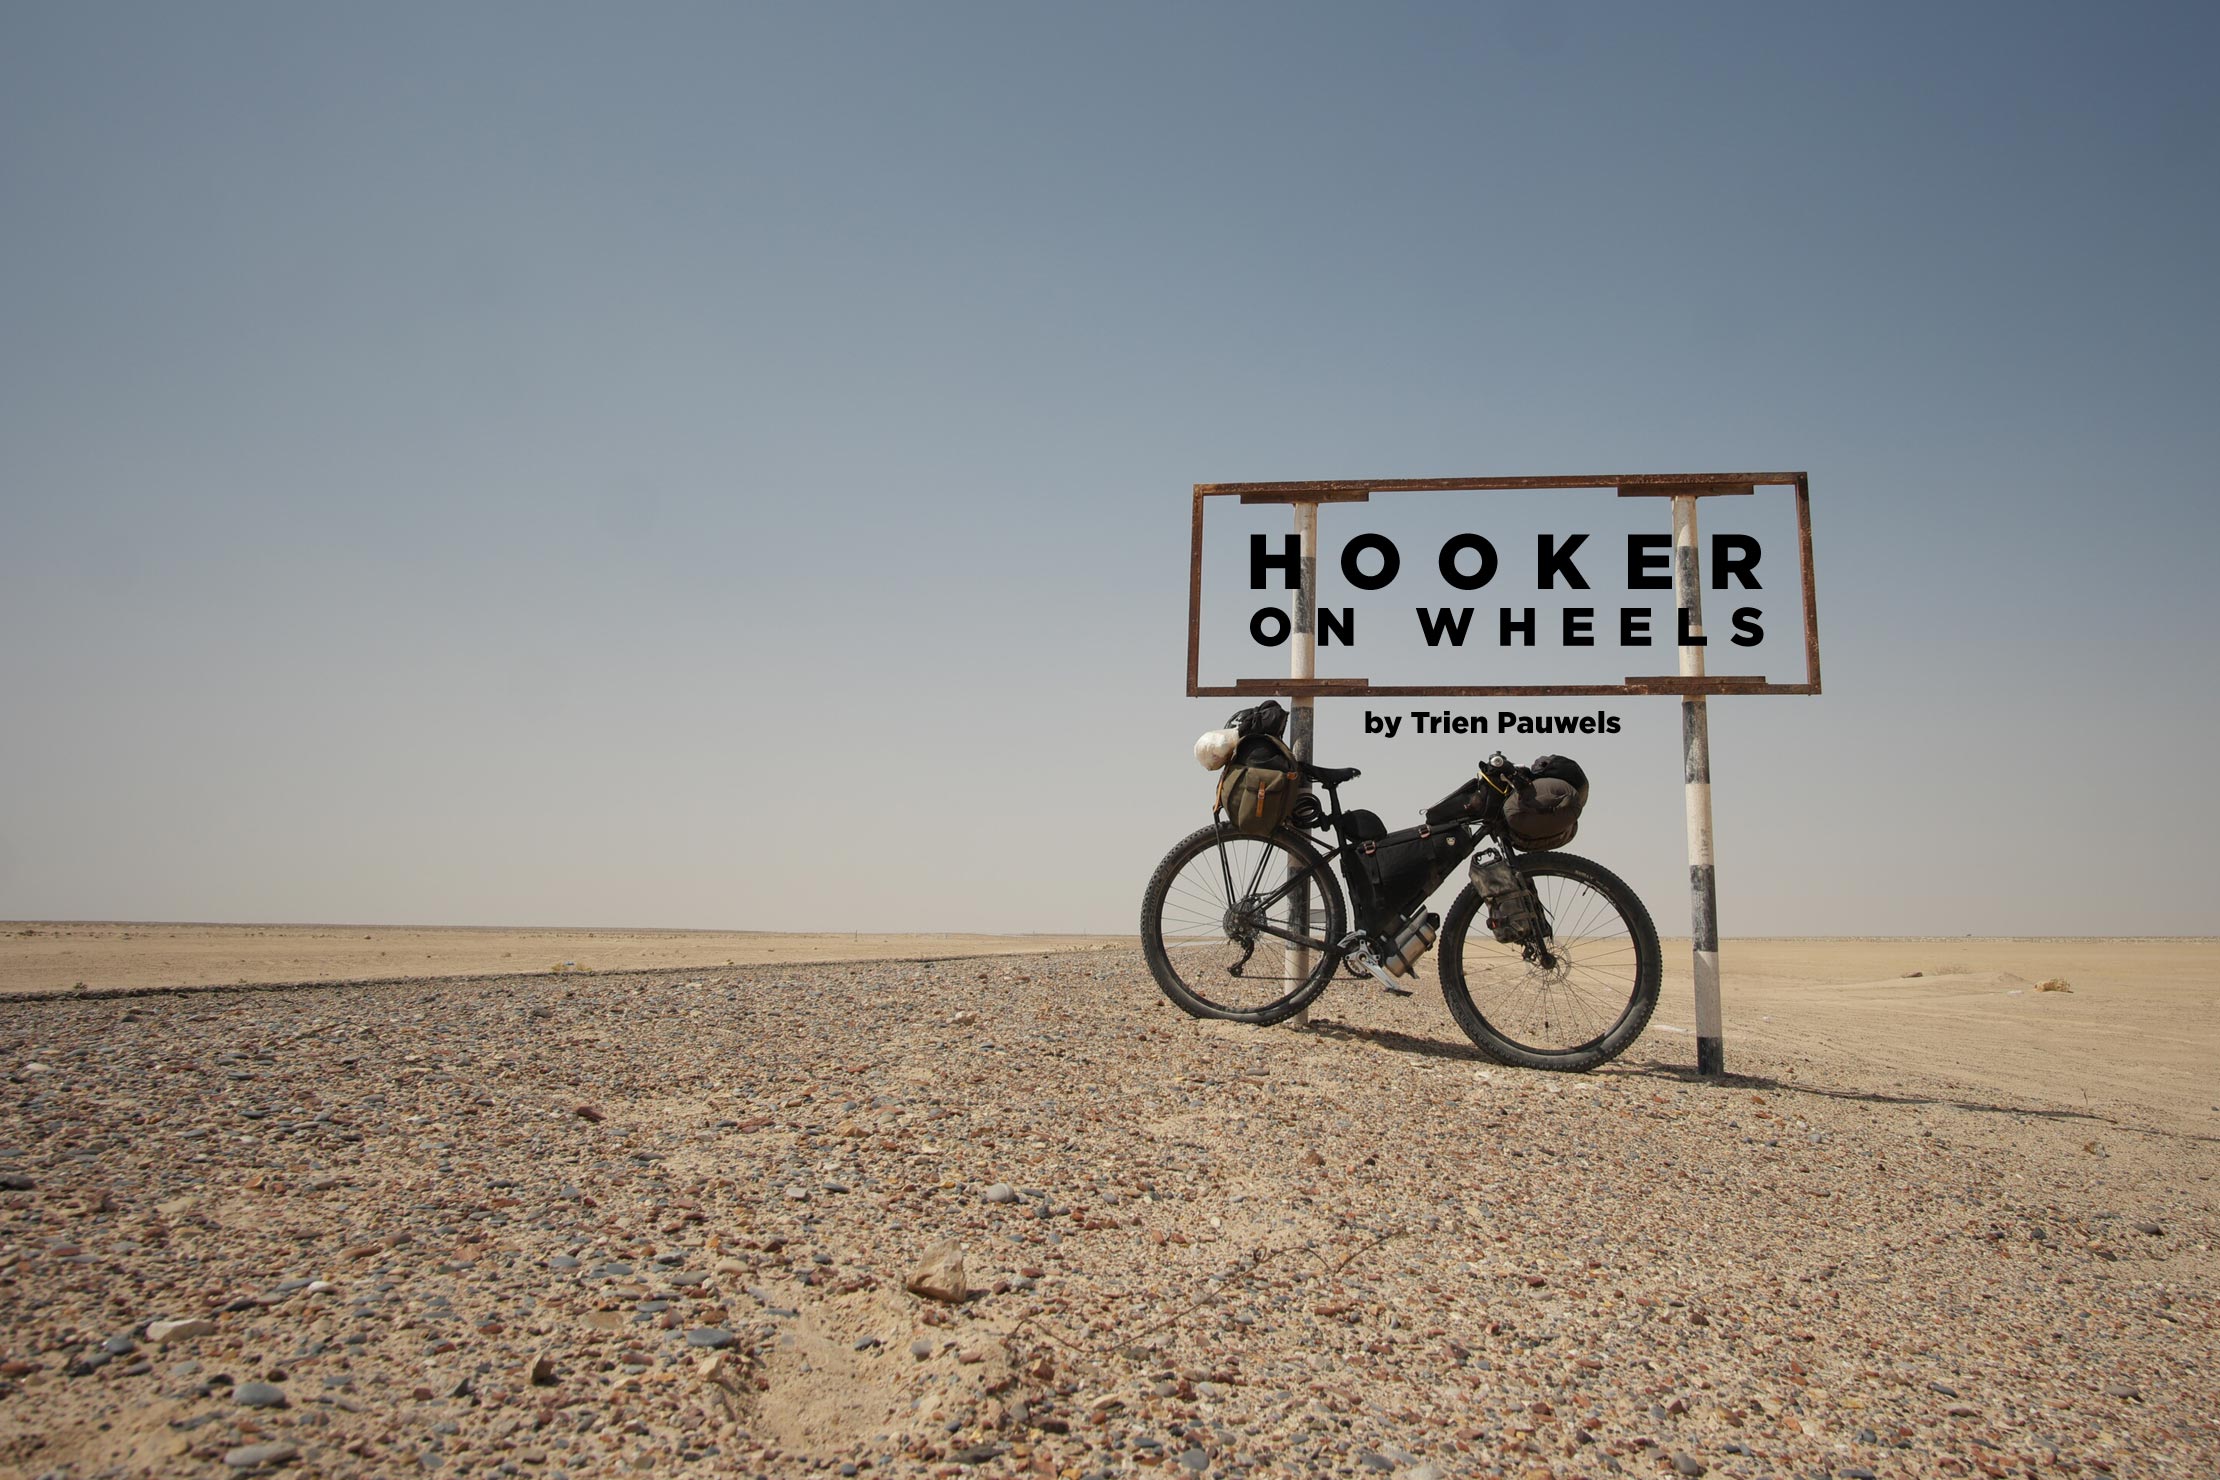 Hooker on Wheels, by Trien Pauwels